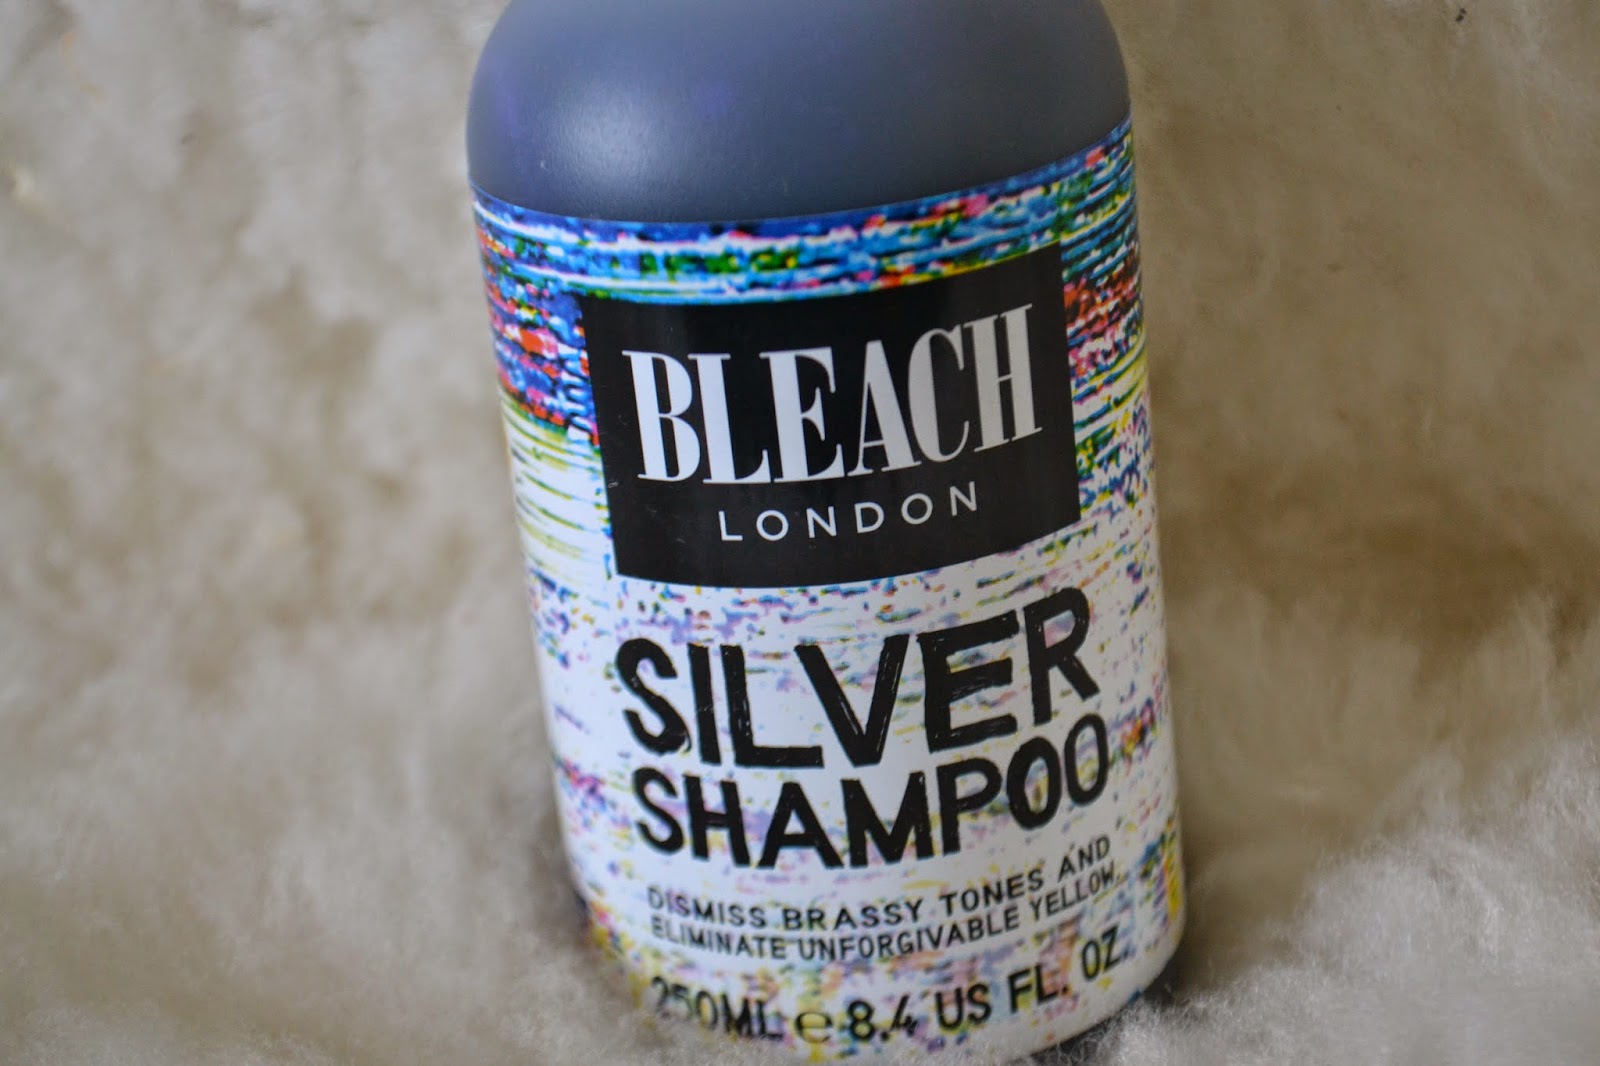 Bleach London Silver Shampoo - wide 5